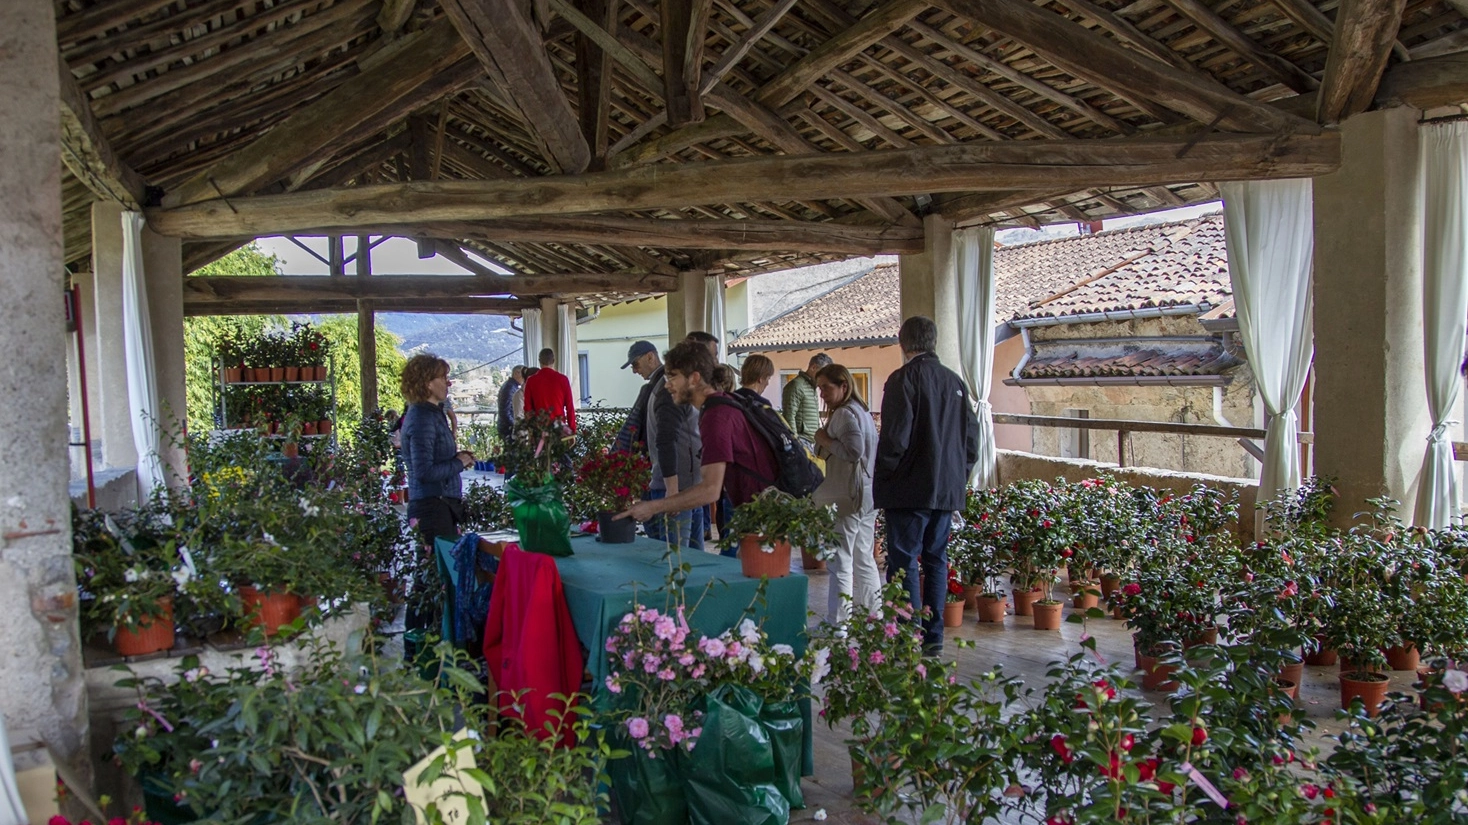 Sabato 6 e domenica 7 aprile a Casalzuigno si potranno ammirare e acquistare oltre 150 varietà provenienti da floricolture del lago Maggiore